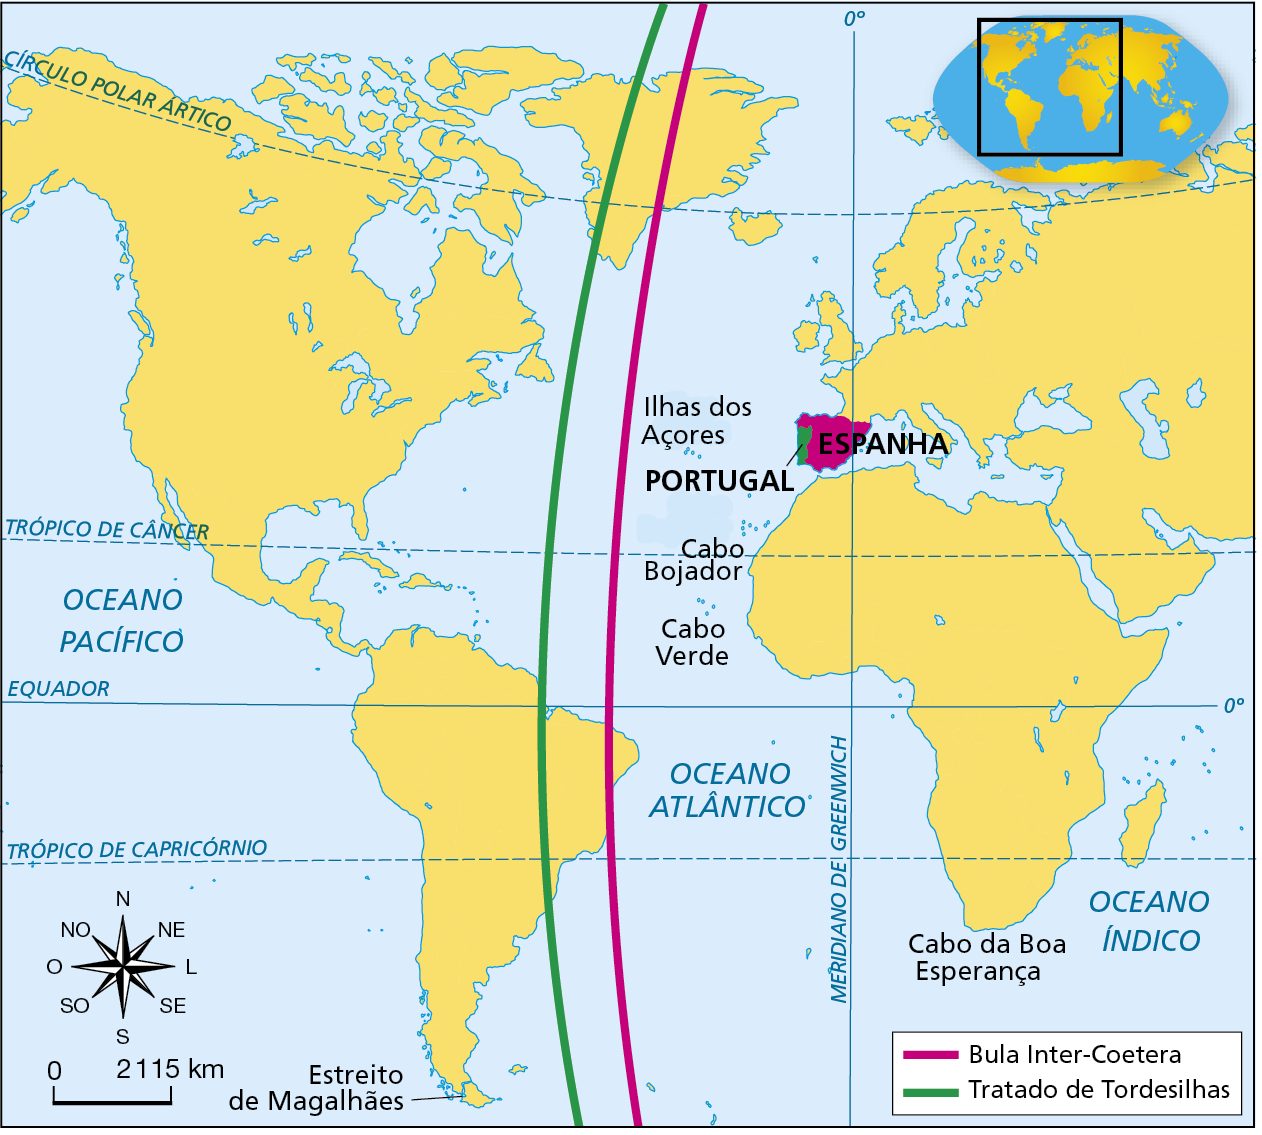 Mapa. Divisão das terras ultramarinas entre Portugal e Espanha (1493-1494). Mapa representando, em amarelo, partes da América, da África, Europa e Ásia.  Destaque para as Ilhas dos Açores, o Cabo Bojador, Cabo Verde o Cabo da Boa esperança. A leste do Meridiano de Greenwich há duas linhas verticais, uma verde e outra cor de rosa. Na legenda, a linha rosa indica: 'Bula Inter-Coetera';  a linha verde, indica: 'Tratado de Tordesilhas'. O território de Portugal está destacado em verde. O território da Espanha está destacado em rosa. Representada por uma linha rosa, a Bula Inter-Coetera atravessa o mapa verticalmente oeste das ilhas dos Açores e de Cabo Verde. Atravessando o leste da Groenlândia e parte do nordeste do território que hoje corresponde ao Brasil. O leste da Groenlândia, uma parte do nordeste da América do Sul, a África e a Ásia ficariam sobre a influência de Portugal; à Espanha, caberia praticamente todo o continente americano. Representado por uma linha verde, a linha do Tratado de Tordesilhas atravessa o mapa verticalmente, a oeste das ilhas do Açores e de Cabo Verde. Atravessando o oeste da Groenlândia, e, na América do Sul, atravessa a região de Belém e da Ilha de Marajó. Com essa divisão, um território maior da Groenlândia, do leste do território da América do Sul, além de África e da Ásia pertenceriam a Portugal; à Espanha, caberia boa parte da América. No canto inferior esquerdo, rosa dos ventos e escala de 0 a 2.115 quilômetros.